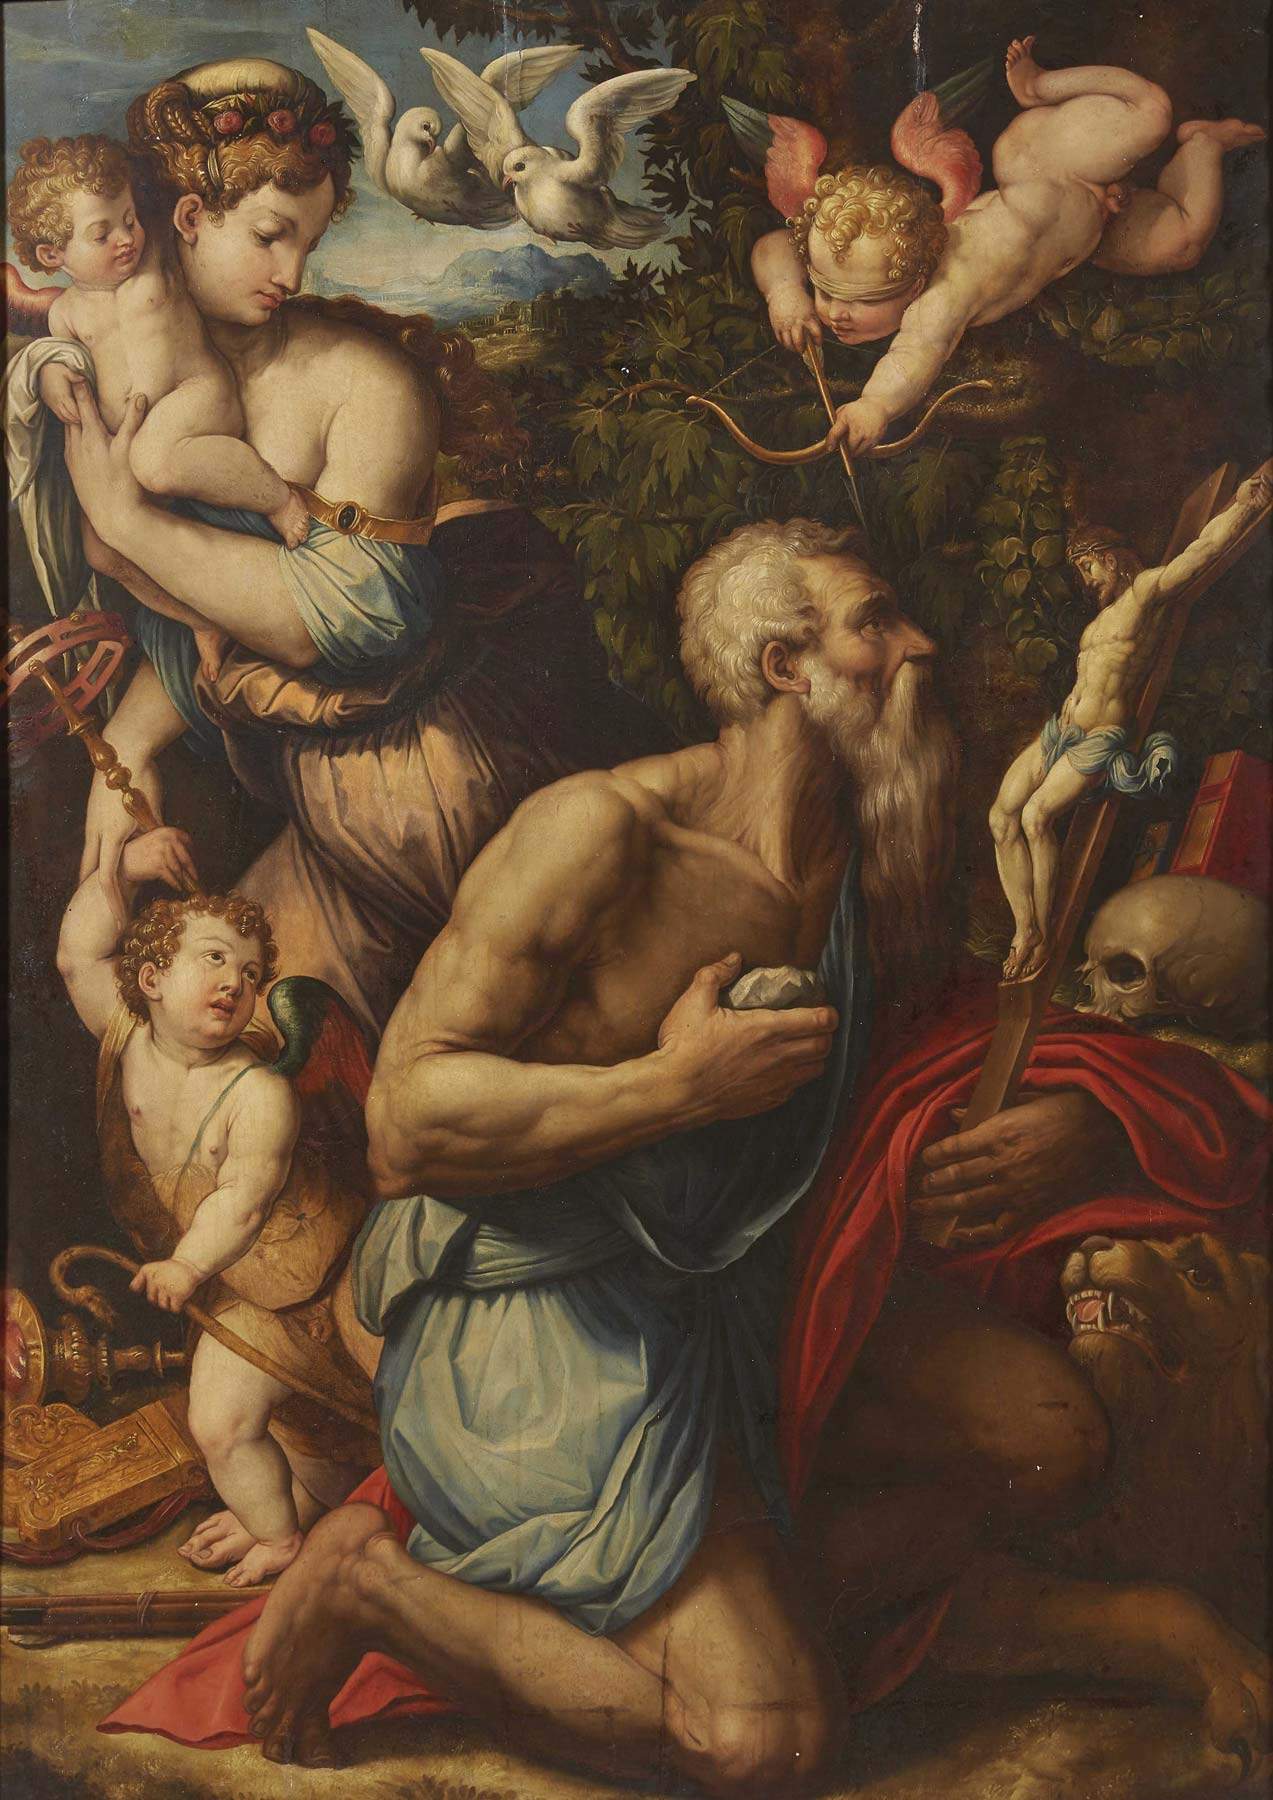 Une importante peinture de Giorgio Vasari vendue aux enchères pour 800 000 euros